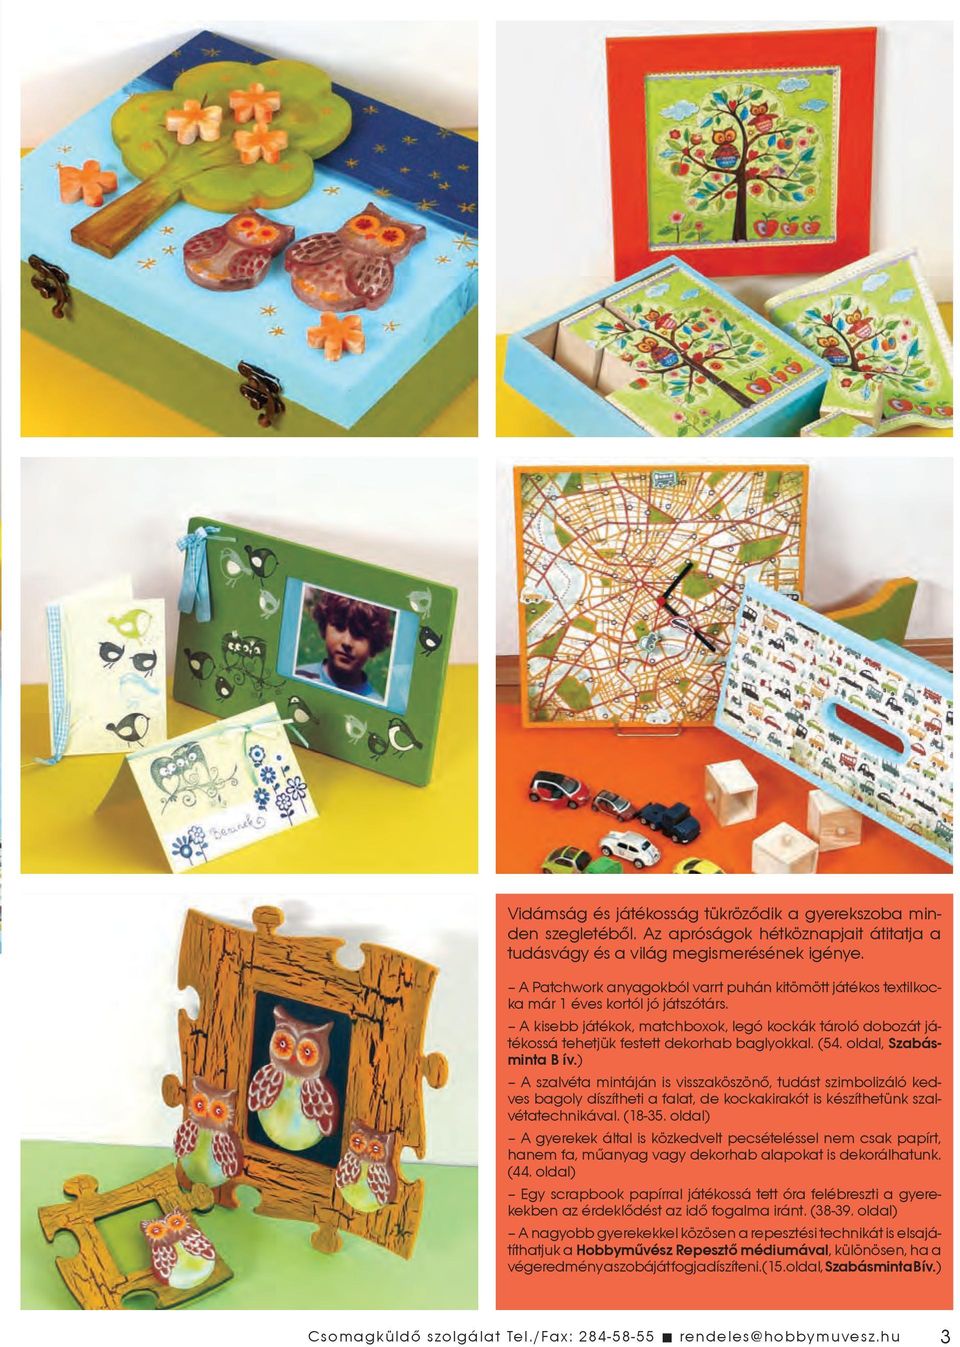 A kisebb játékok, matchboxok, legó kockák tároló dobozát játékossá tehetjük festett dekorhab baglyokkal. (54. oldal, Szabásminta B ív.